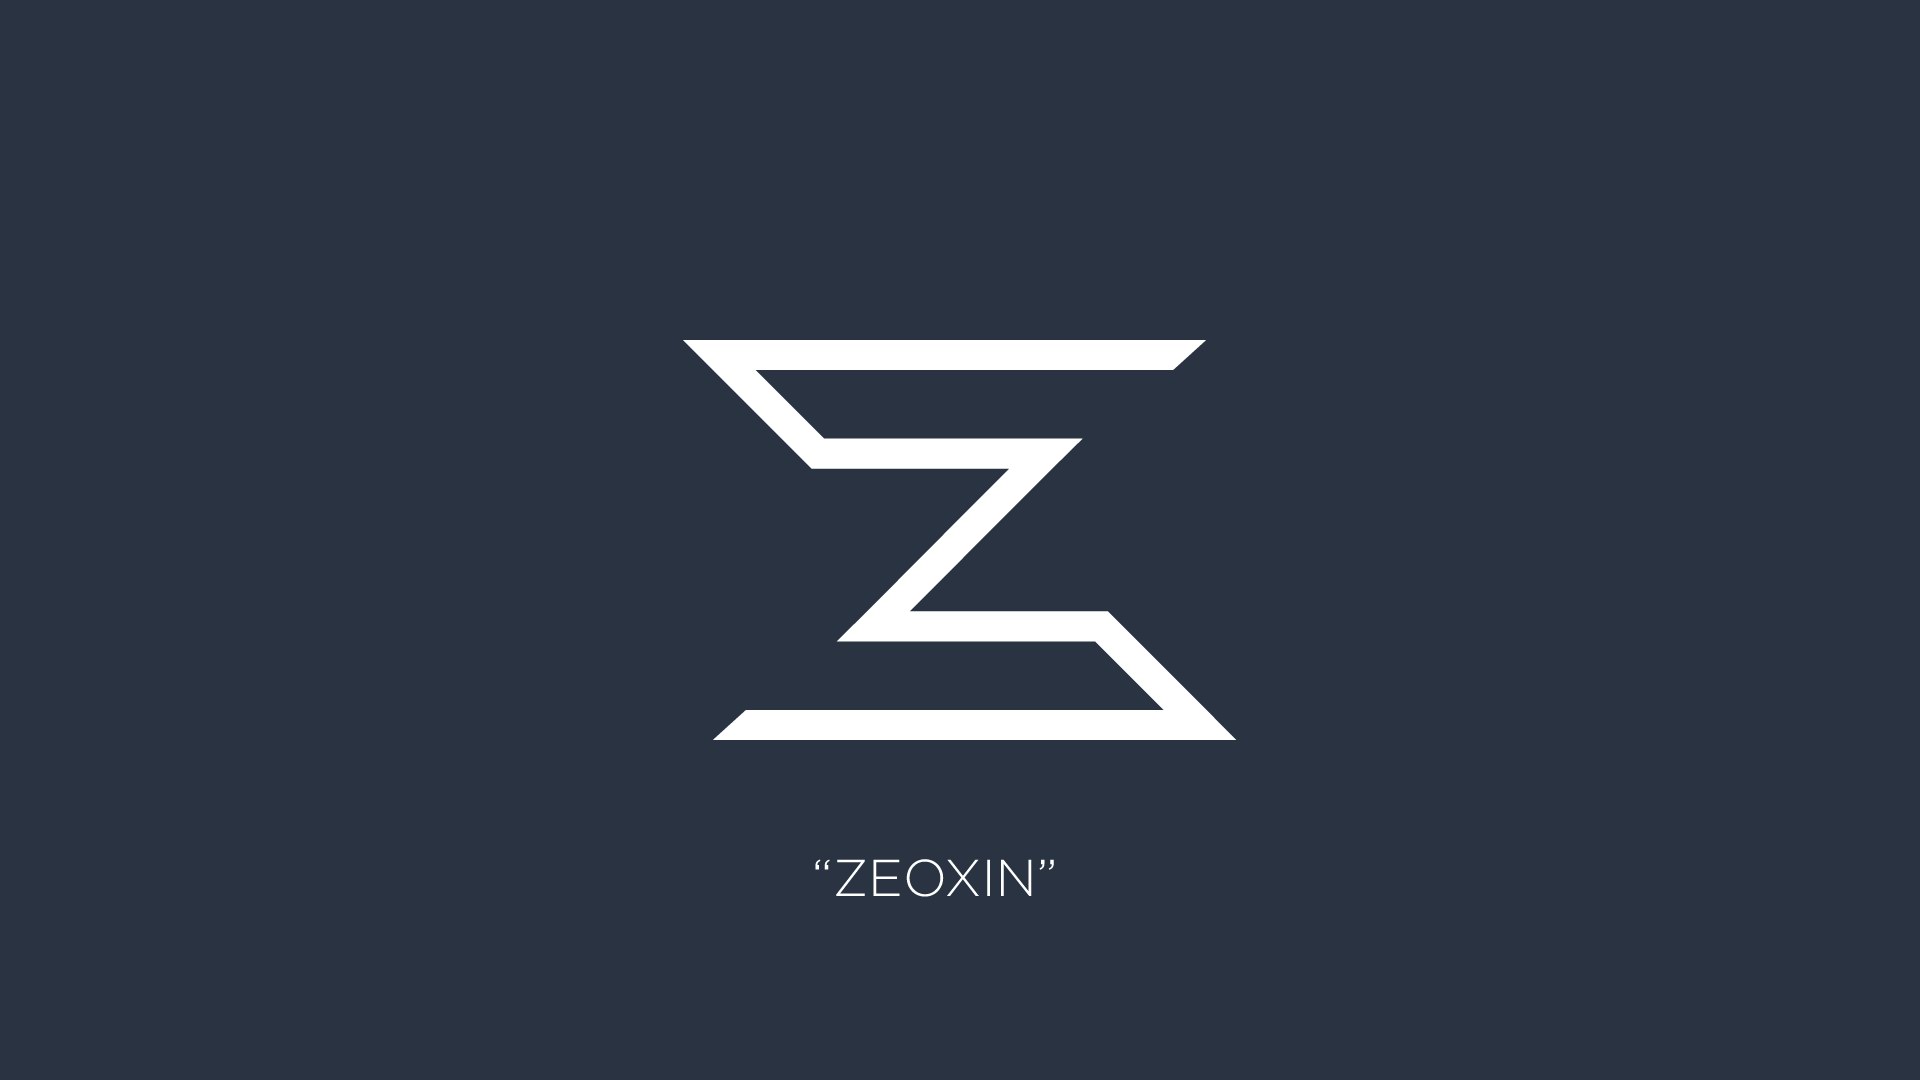 Z вид. Z логотип. Эмблема с буквой z. Стилизованная буква z. Дизайн буквы z.